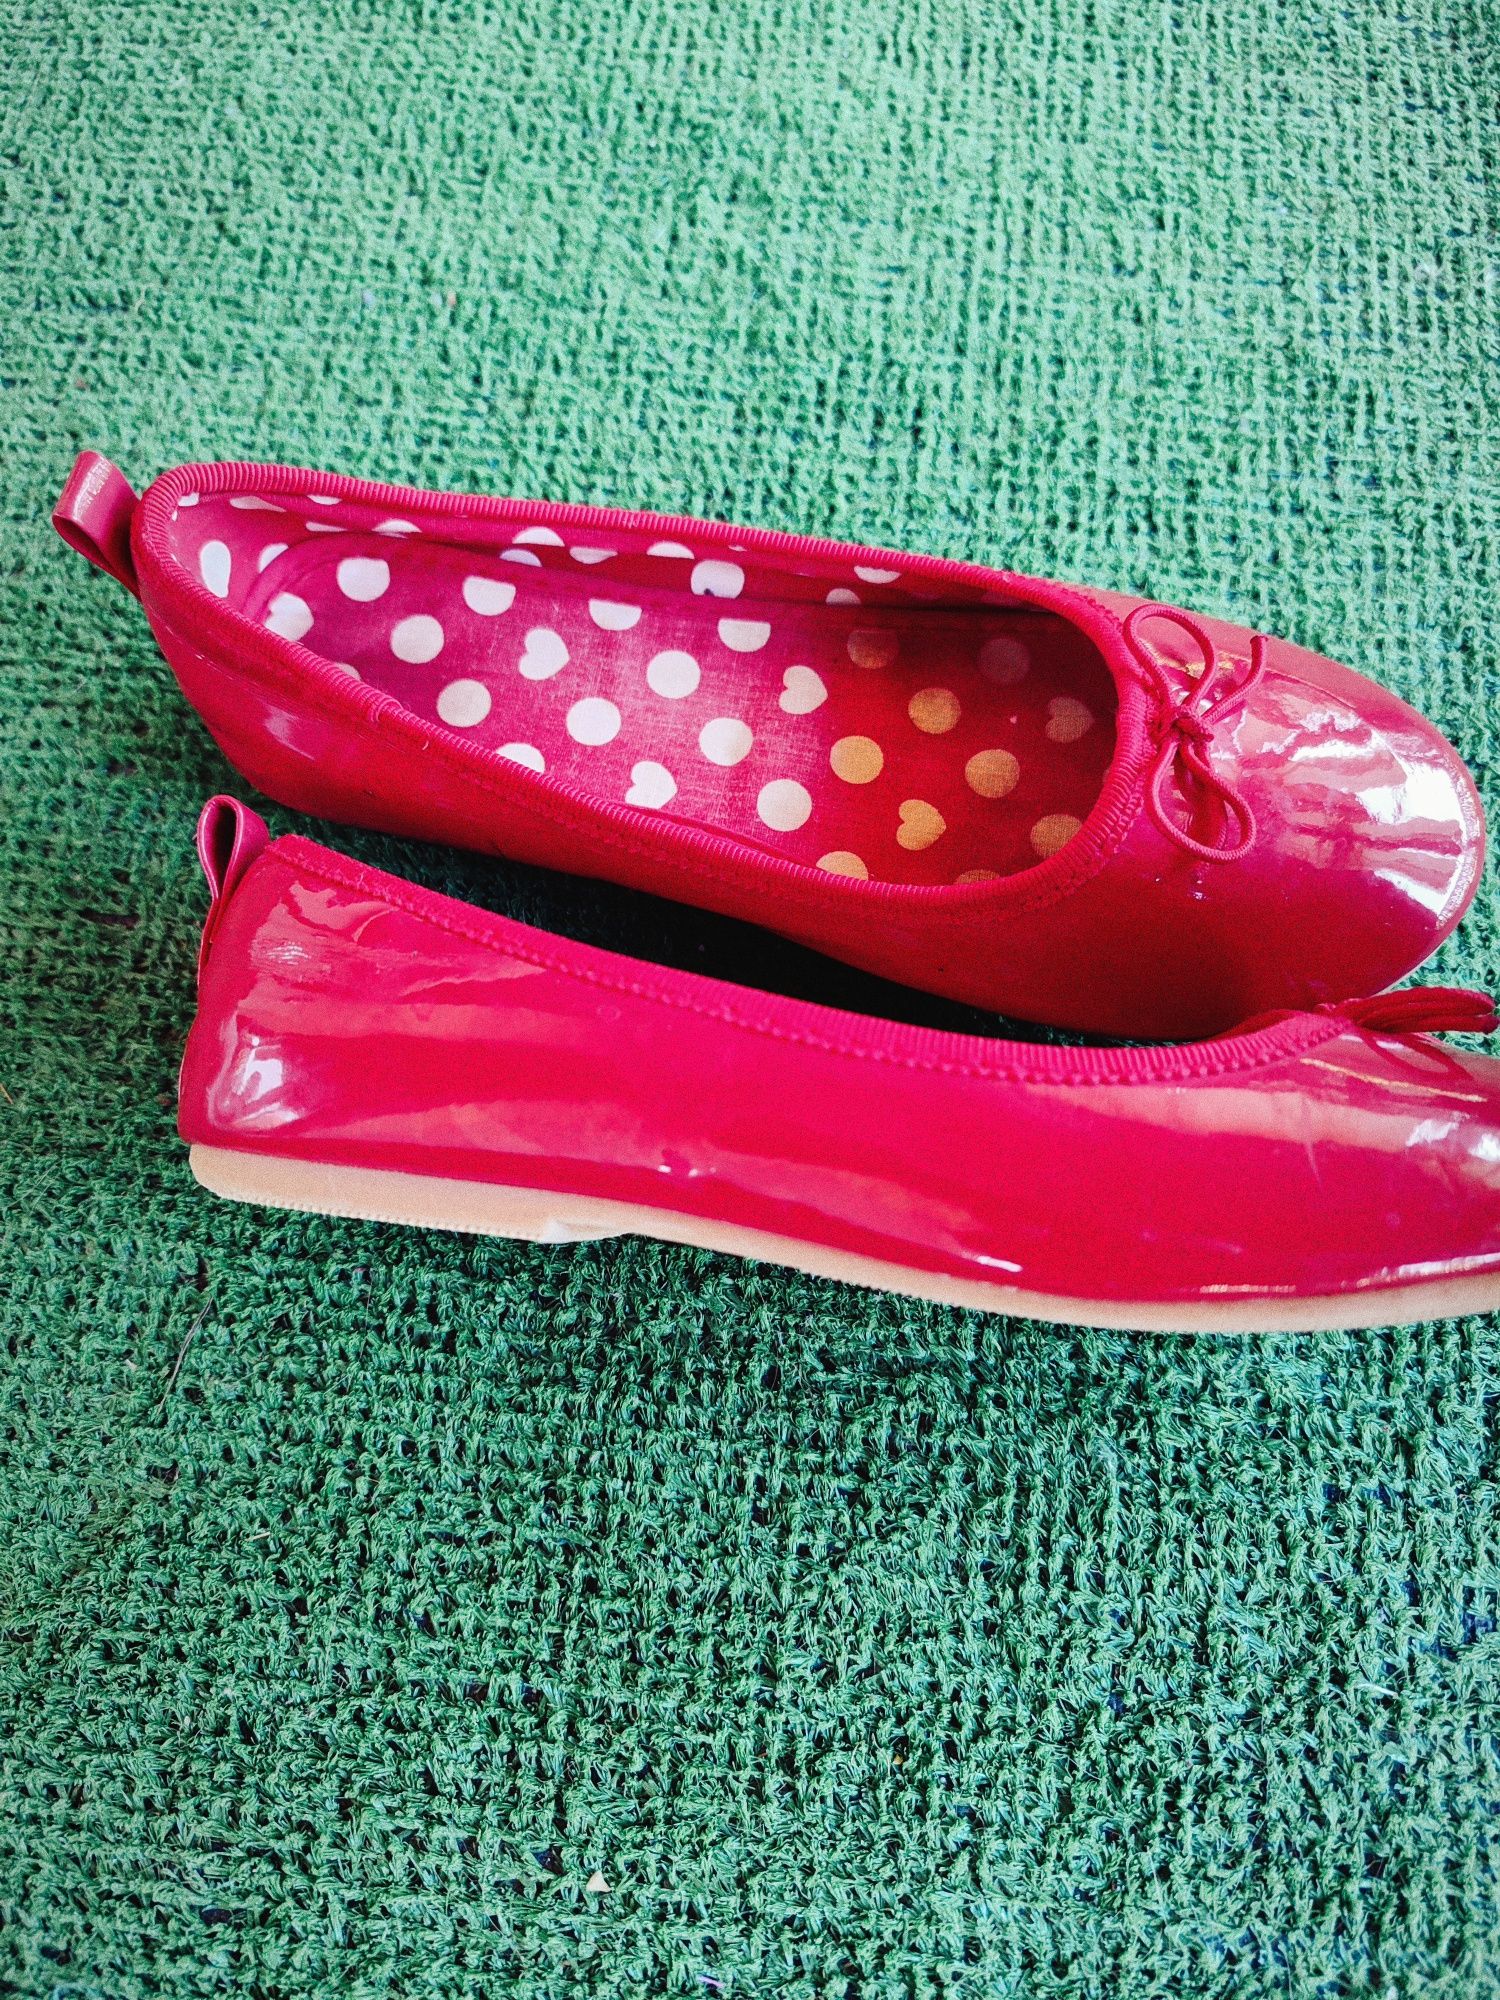 Балетки, туфельки червоні hm 31 розмір